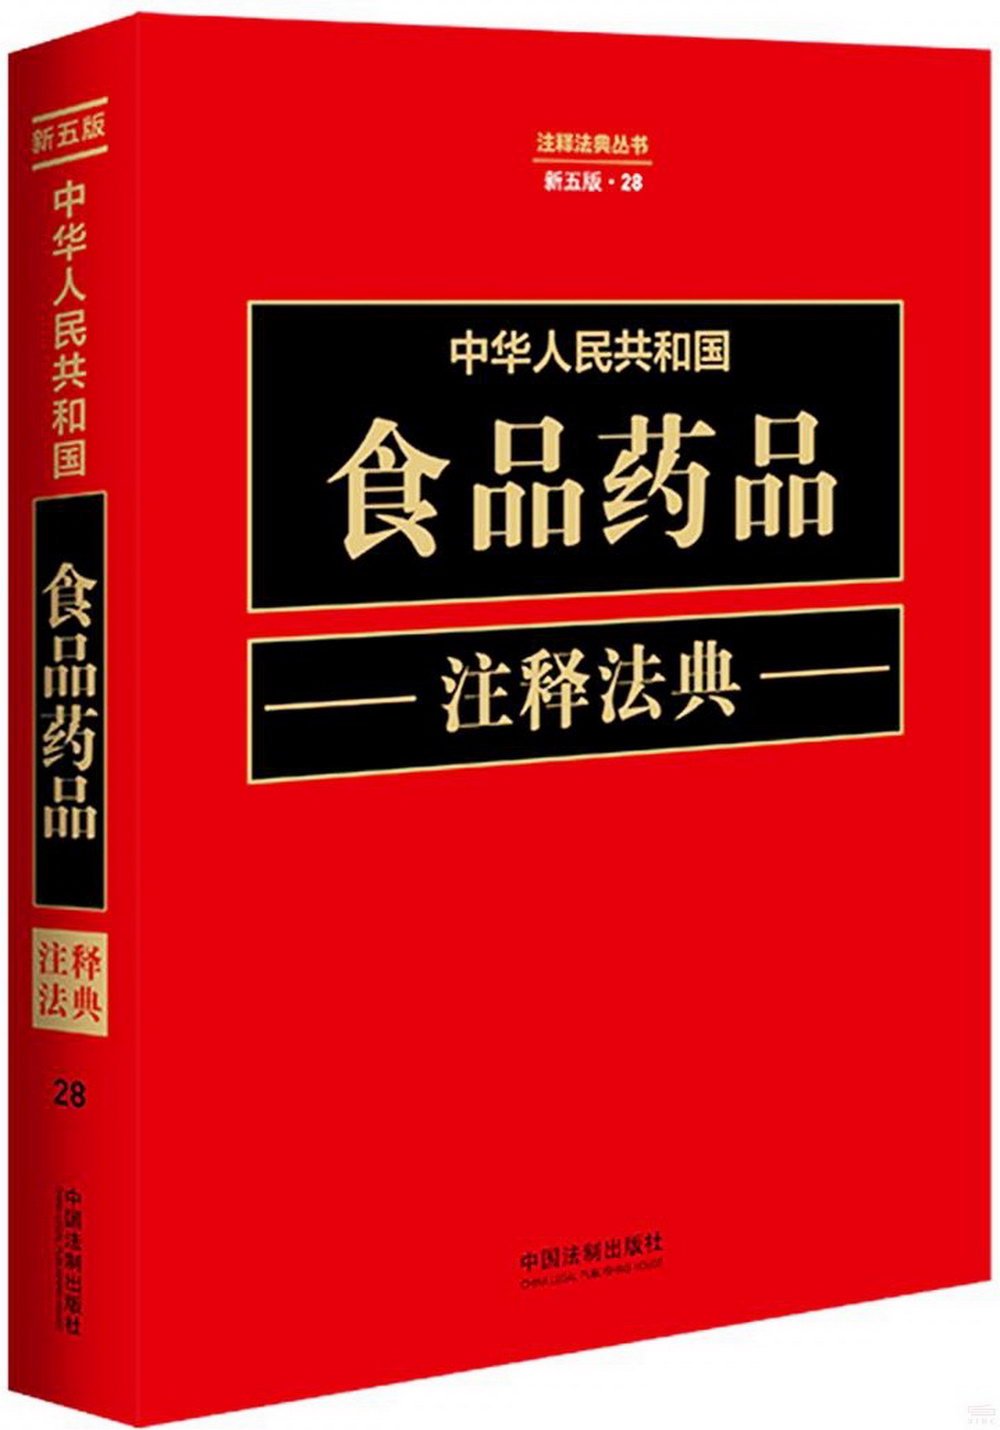 中華人民共和國食品藥品註釋法典（新五版·28）